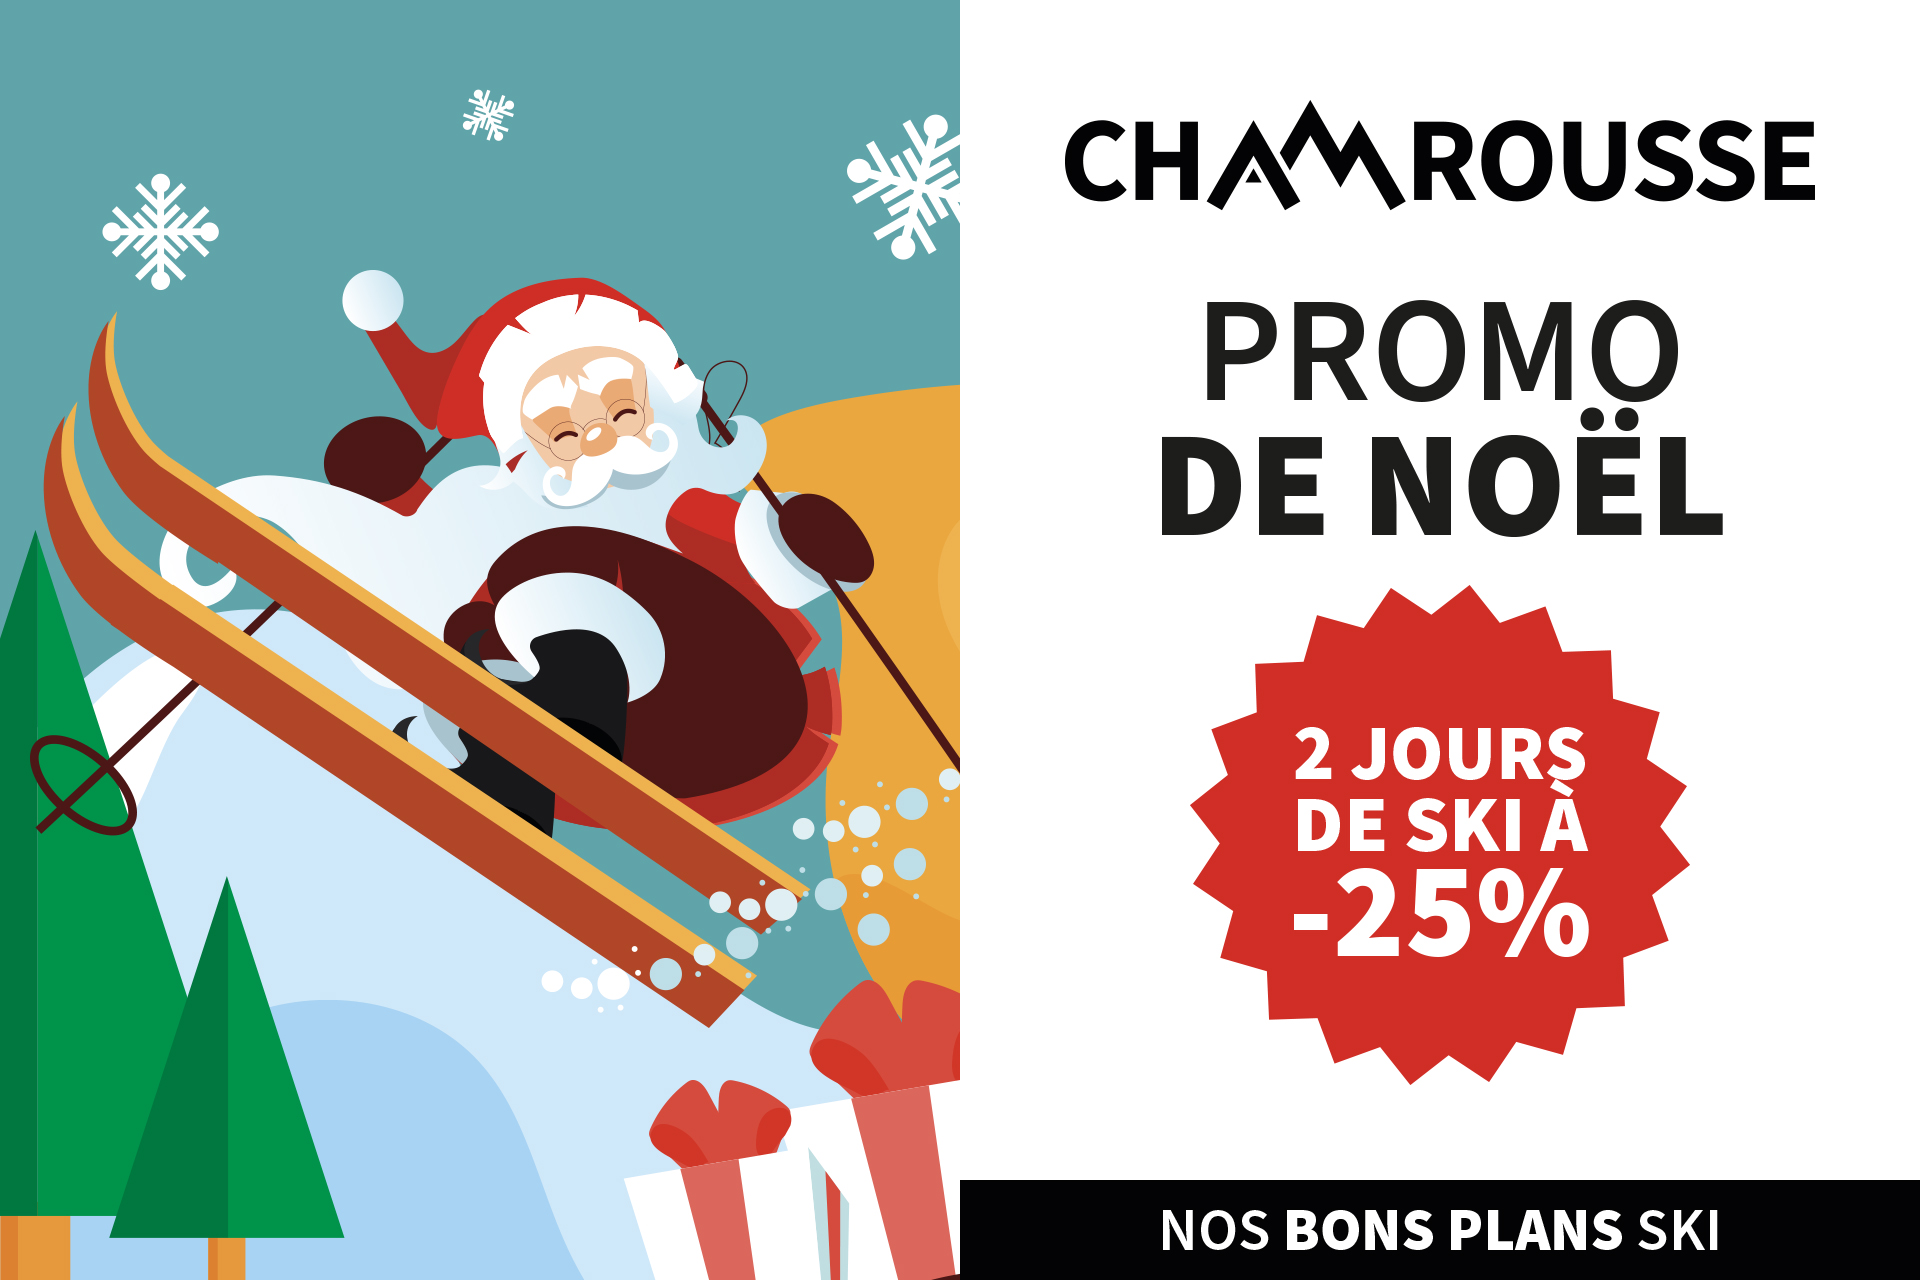 Promo de Noël : -25% de réduction ! - Chamrousse